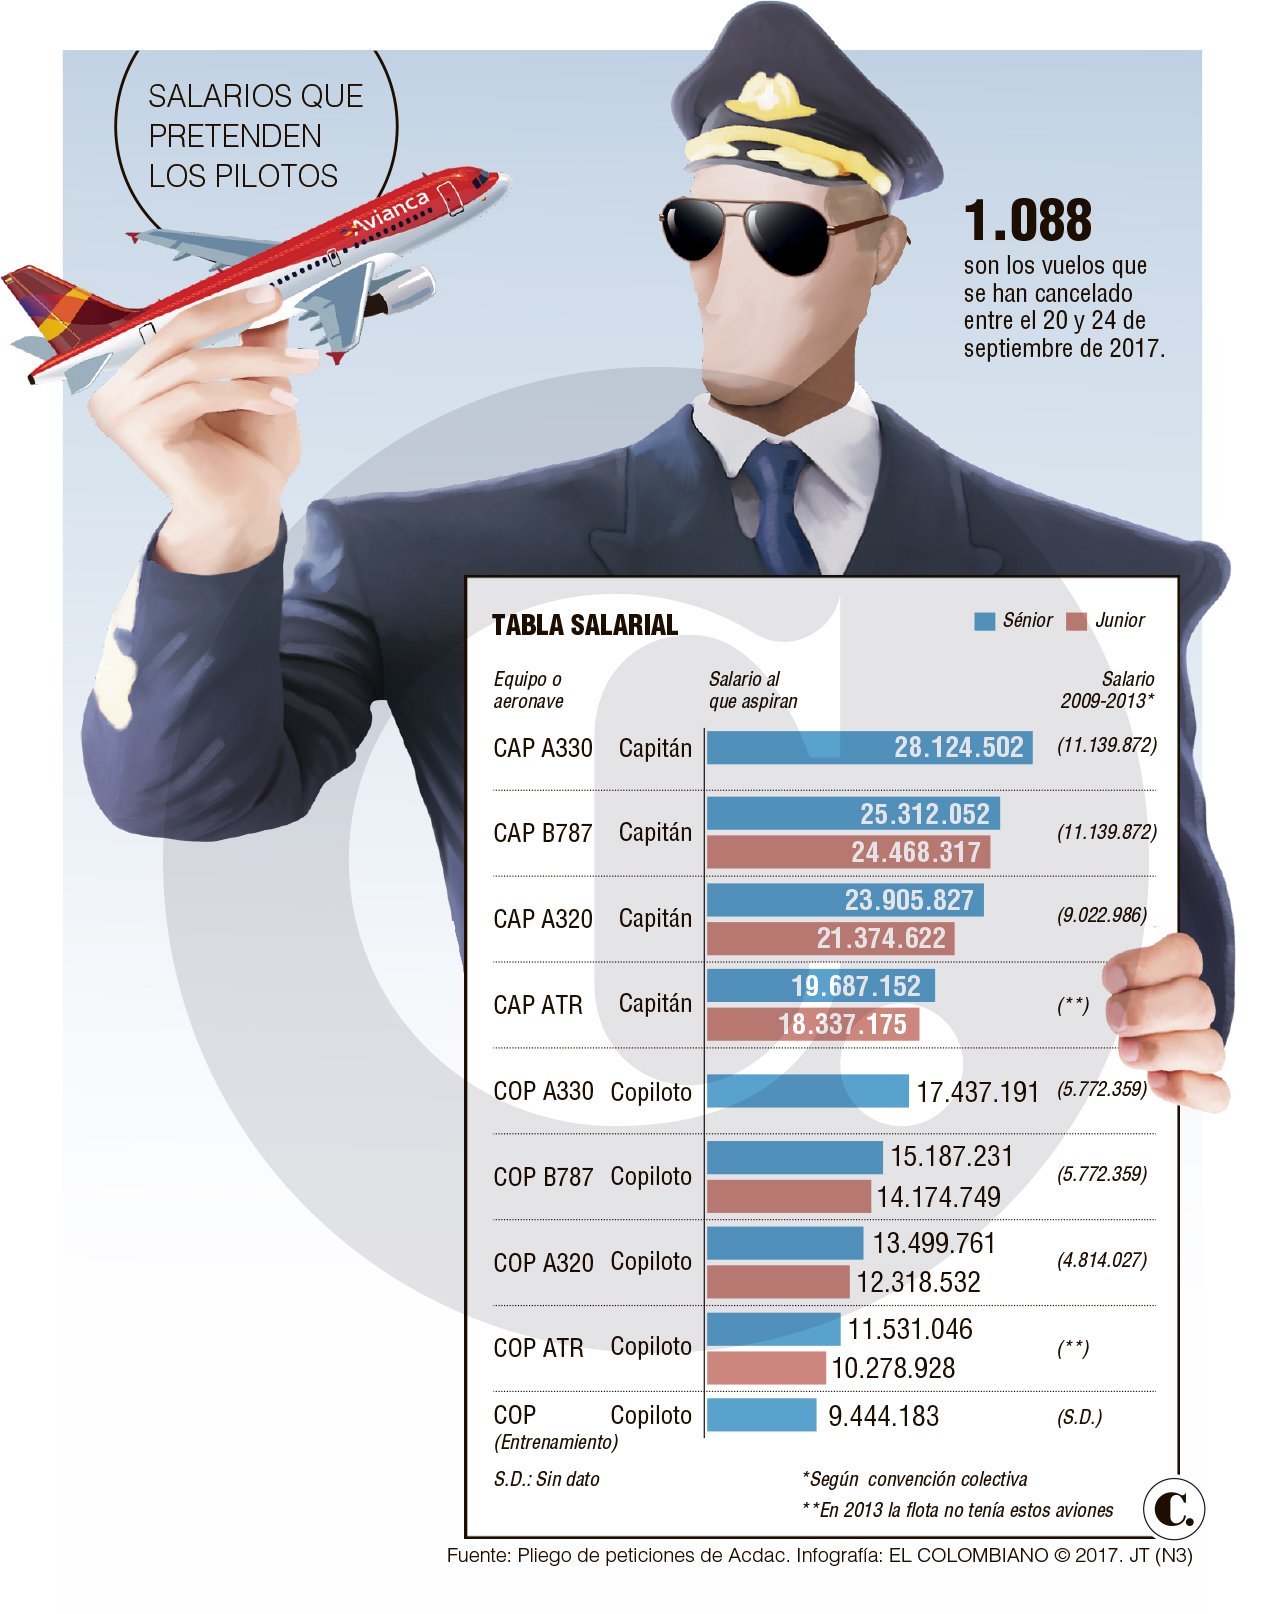 Rápido ascenso de sueldos de los pilotos de Avianca